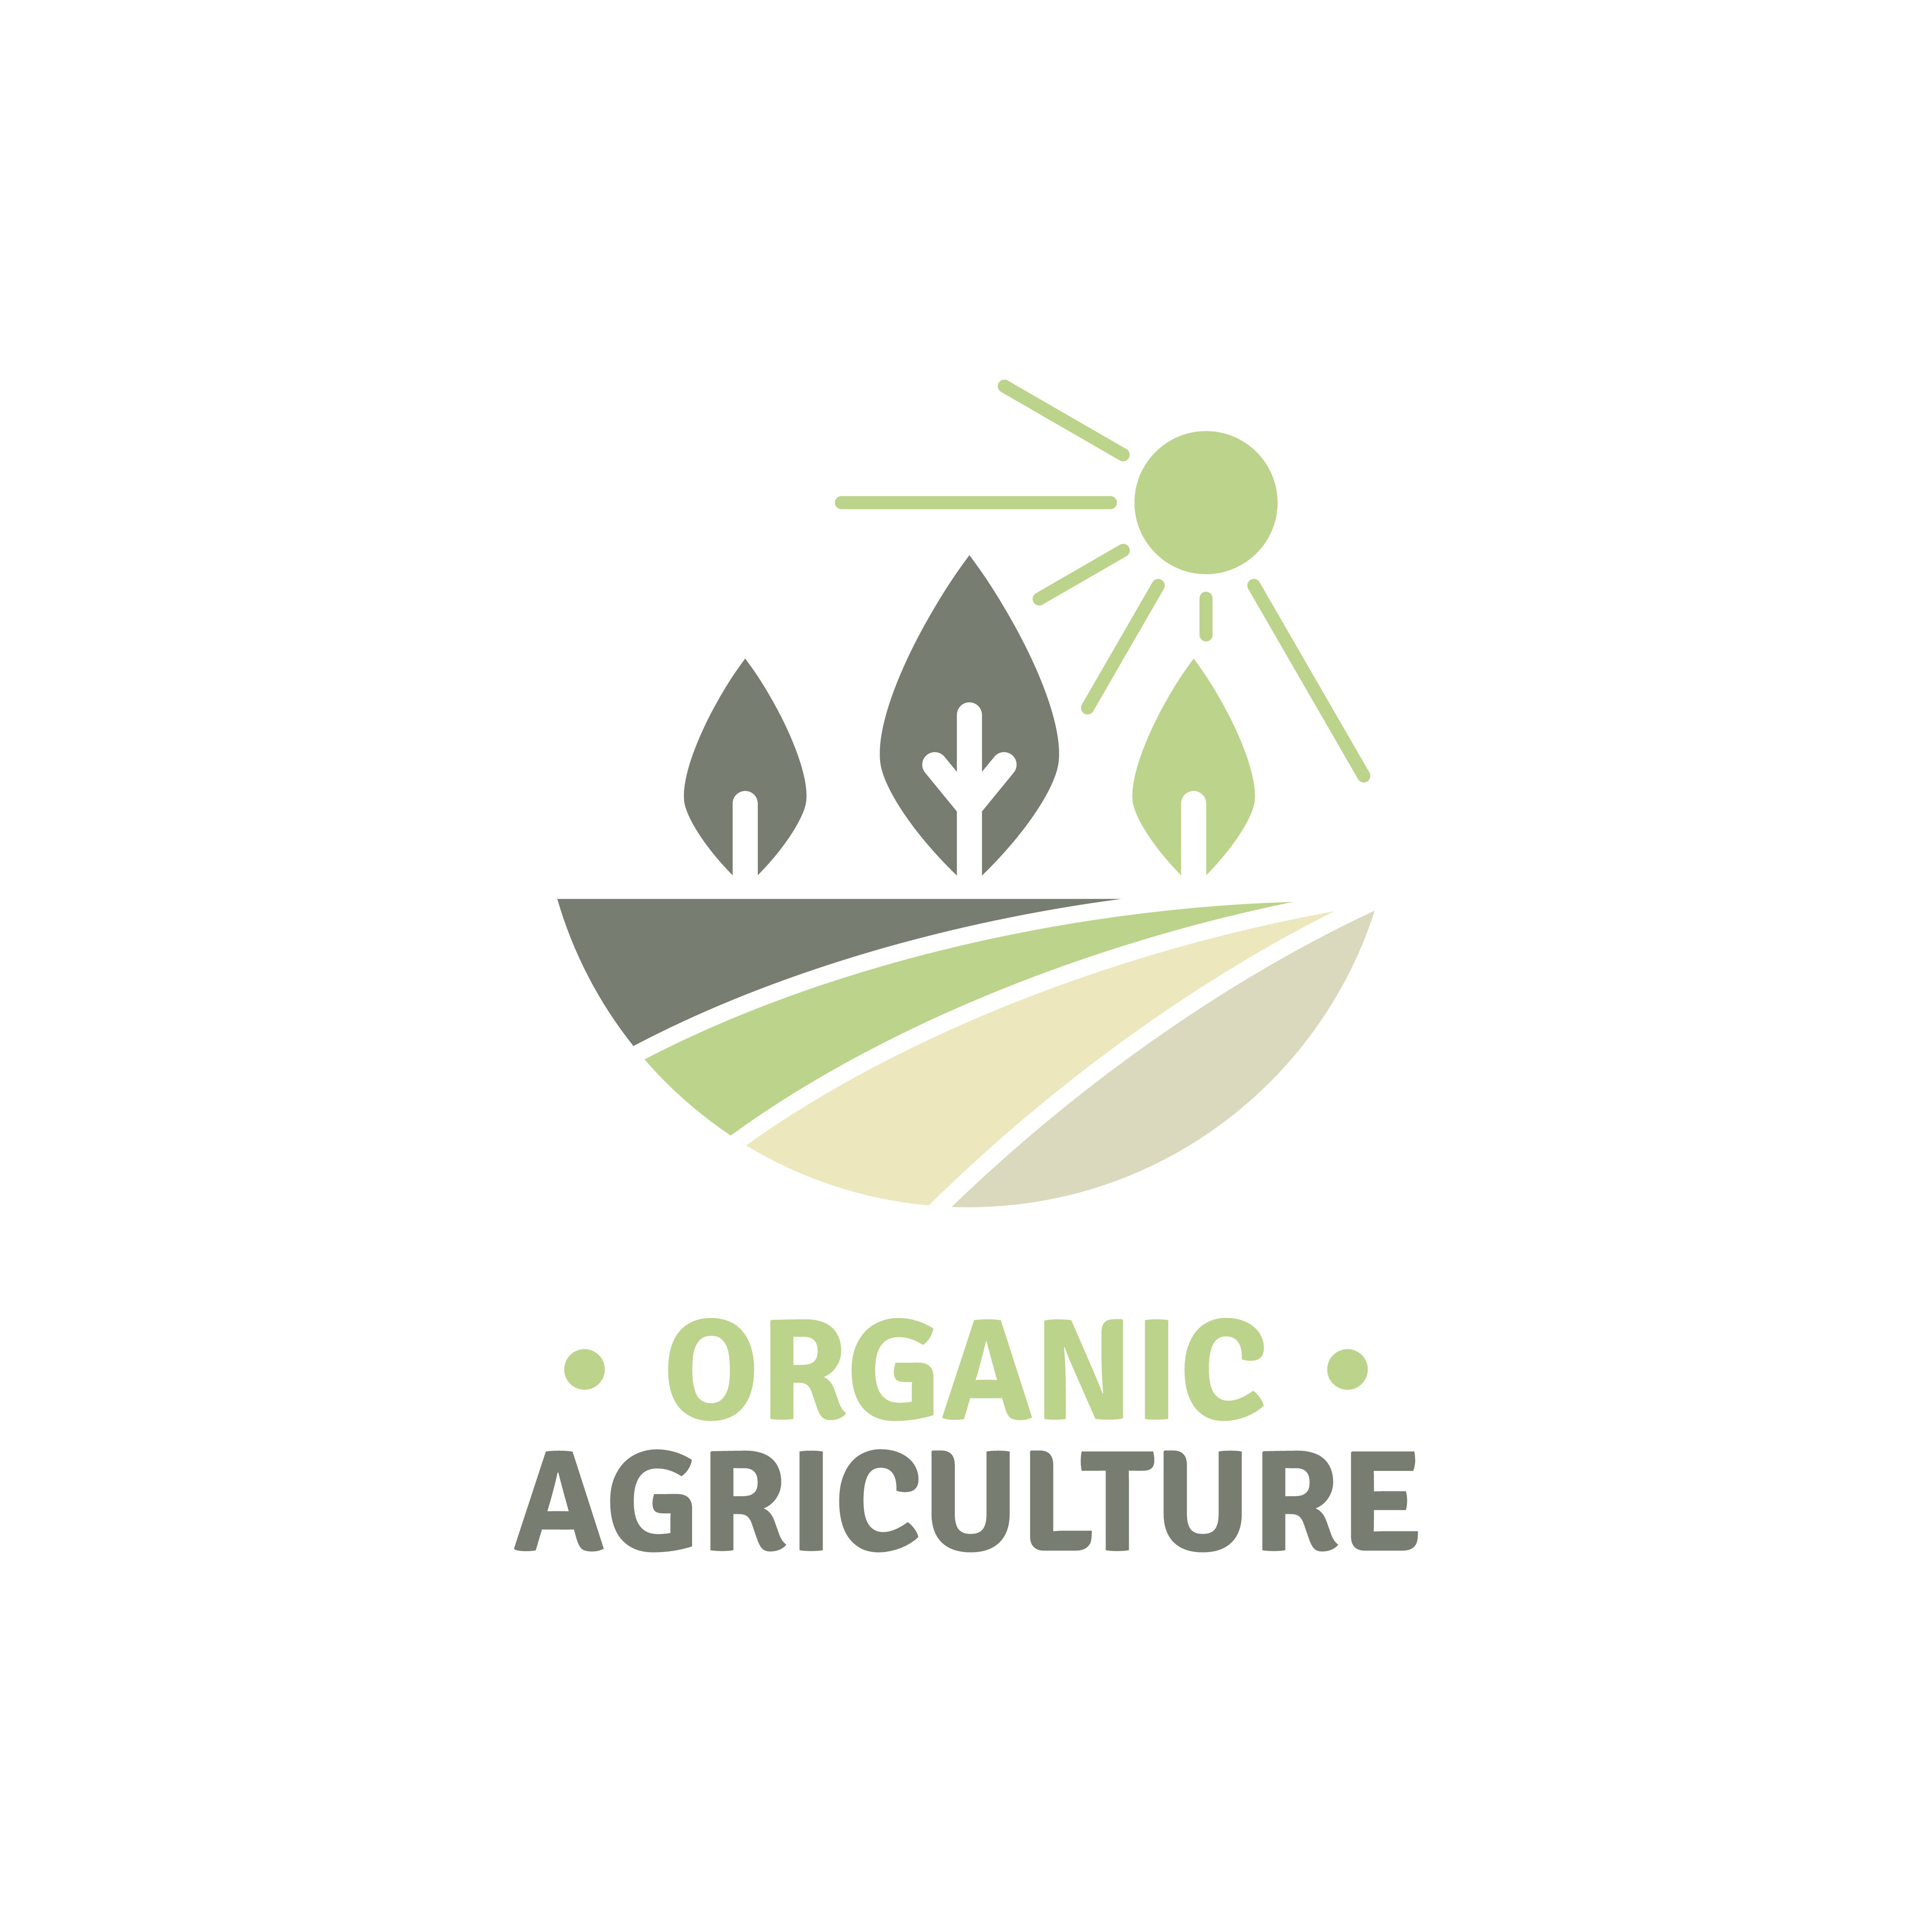 Farm Logo Design Agricultural Logos Farm To Table